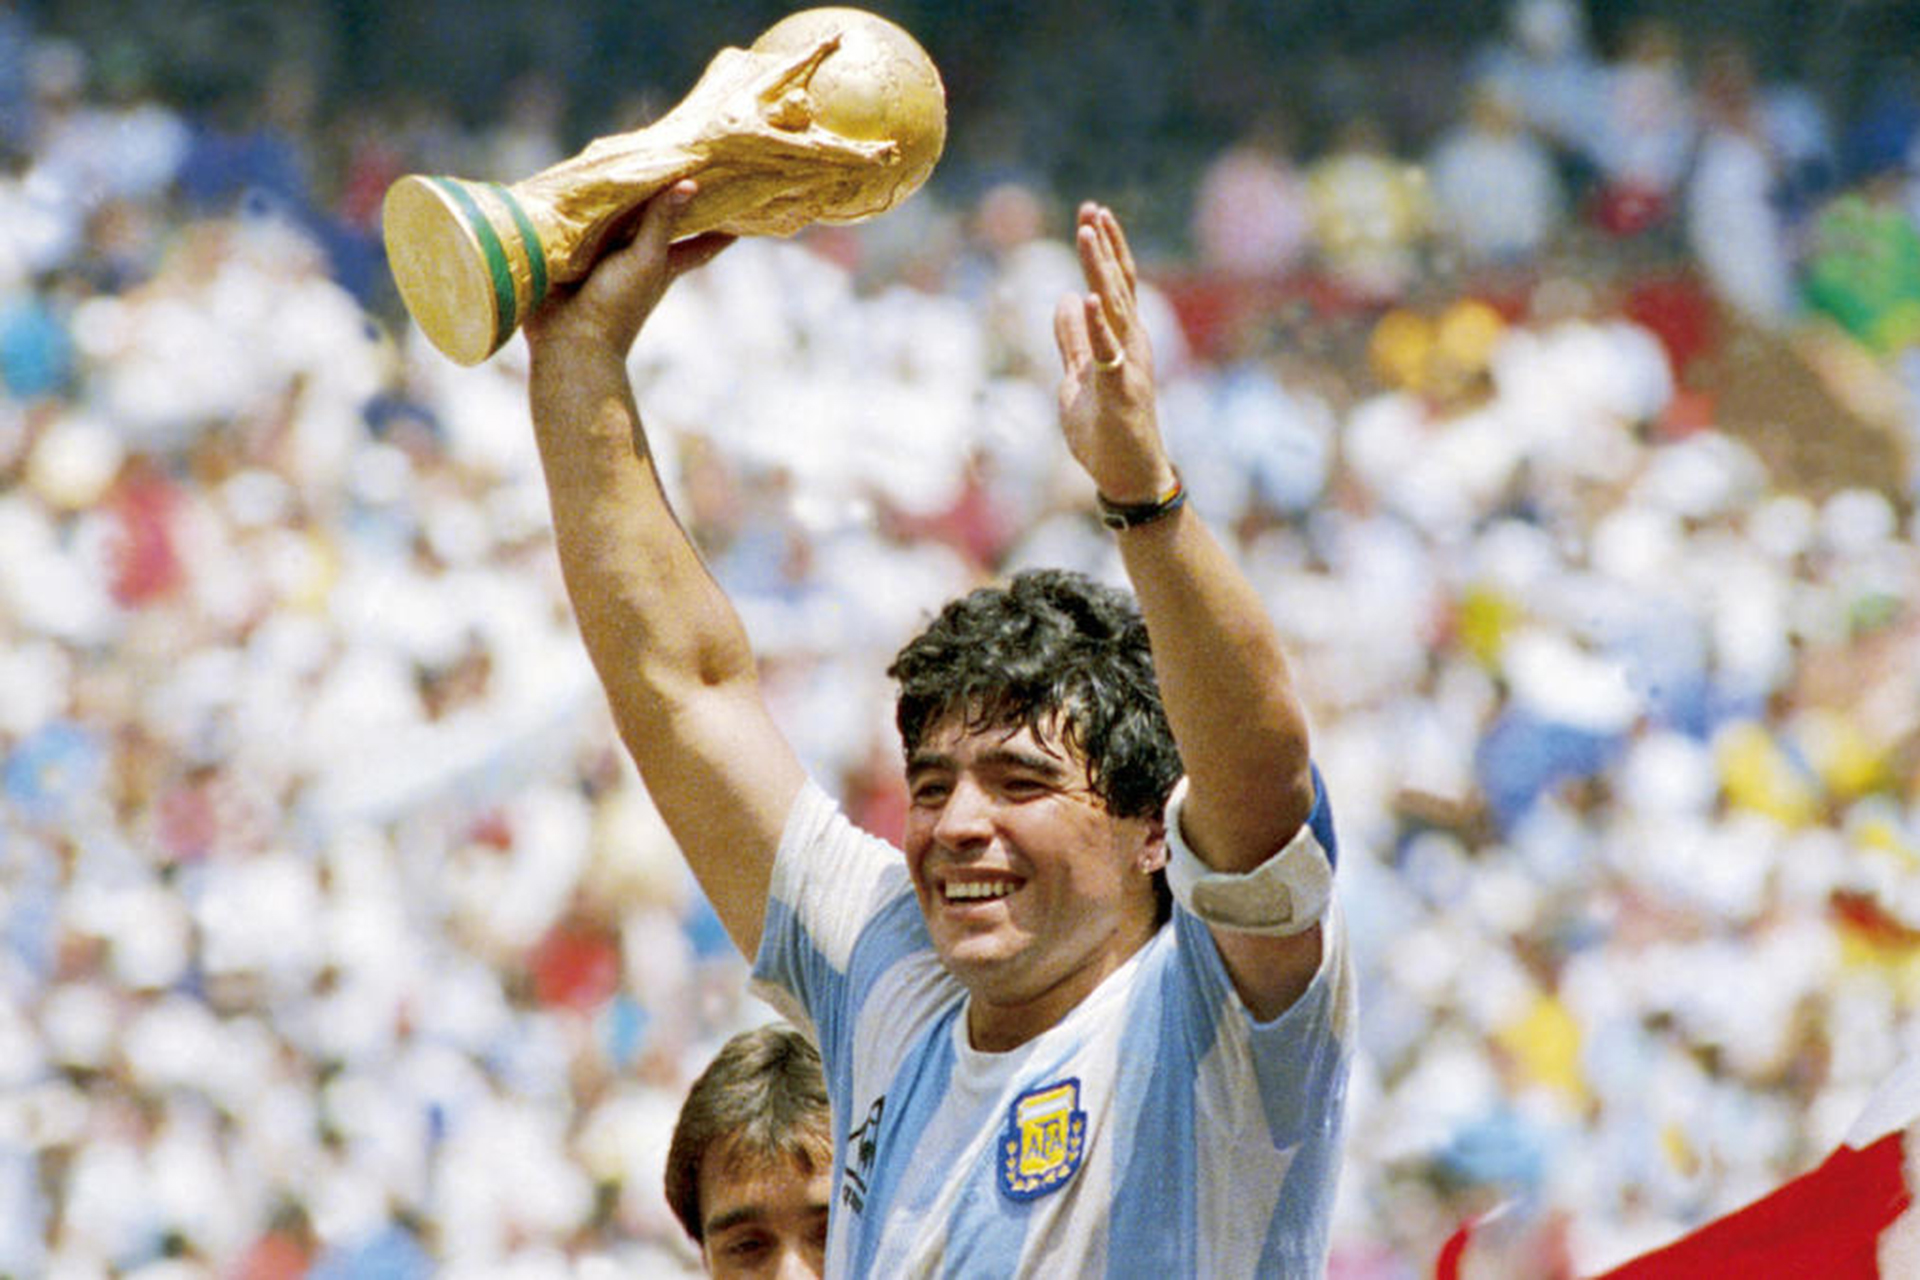 Chúng tôi cung cấp cho bạn giải pháp tải video Diego Maradona trên Instagram